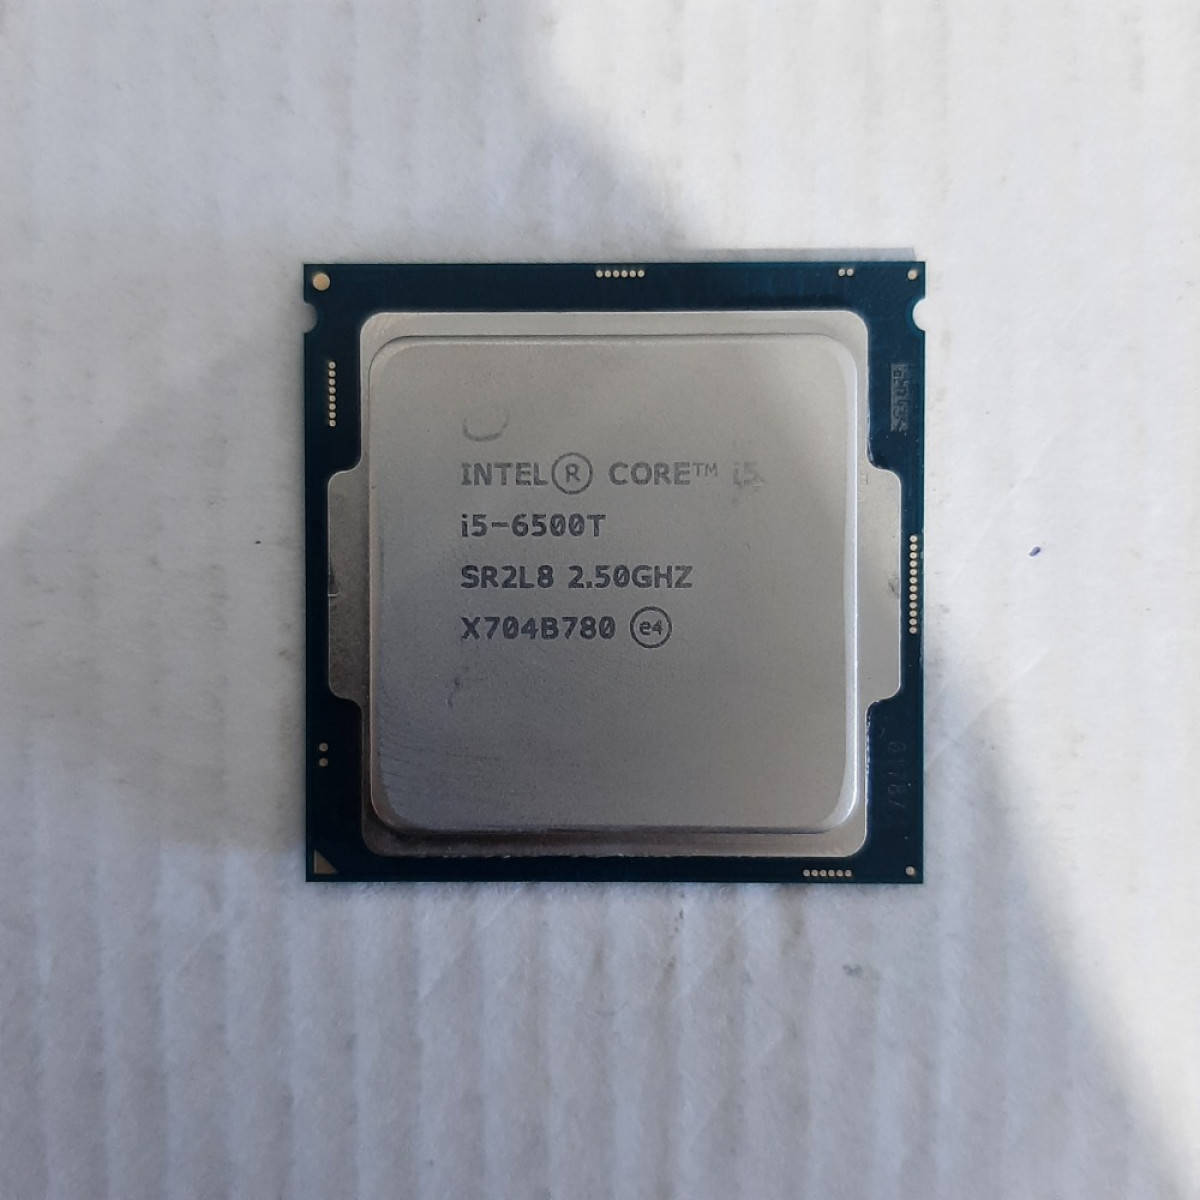 Intel Core i5 6500 T i5-6500T 4Core 2.5 GHz Turbo 3.10 GHz LGA1151